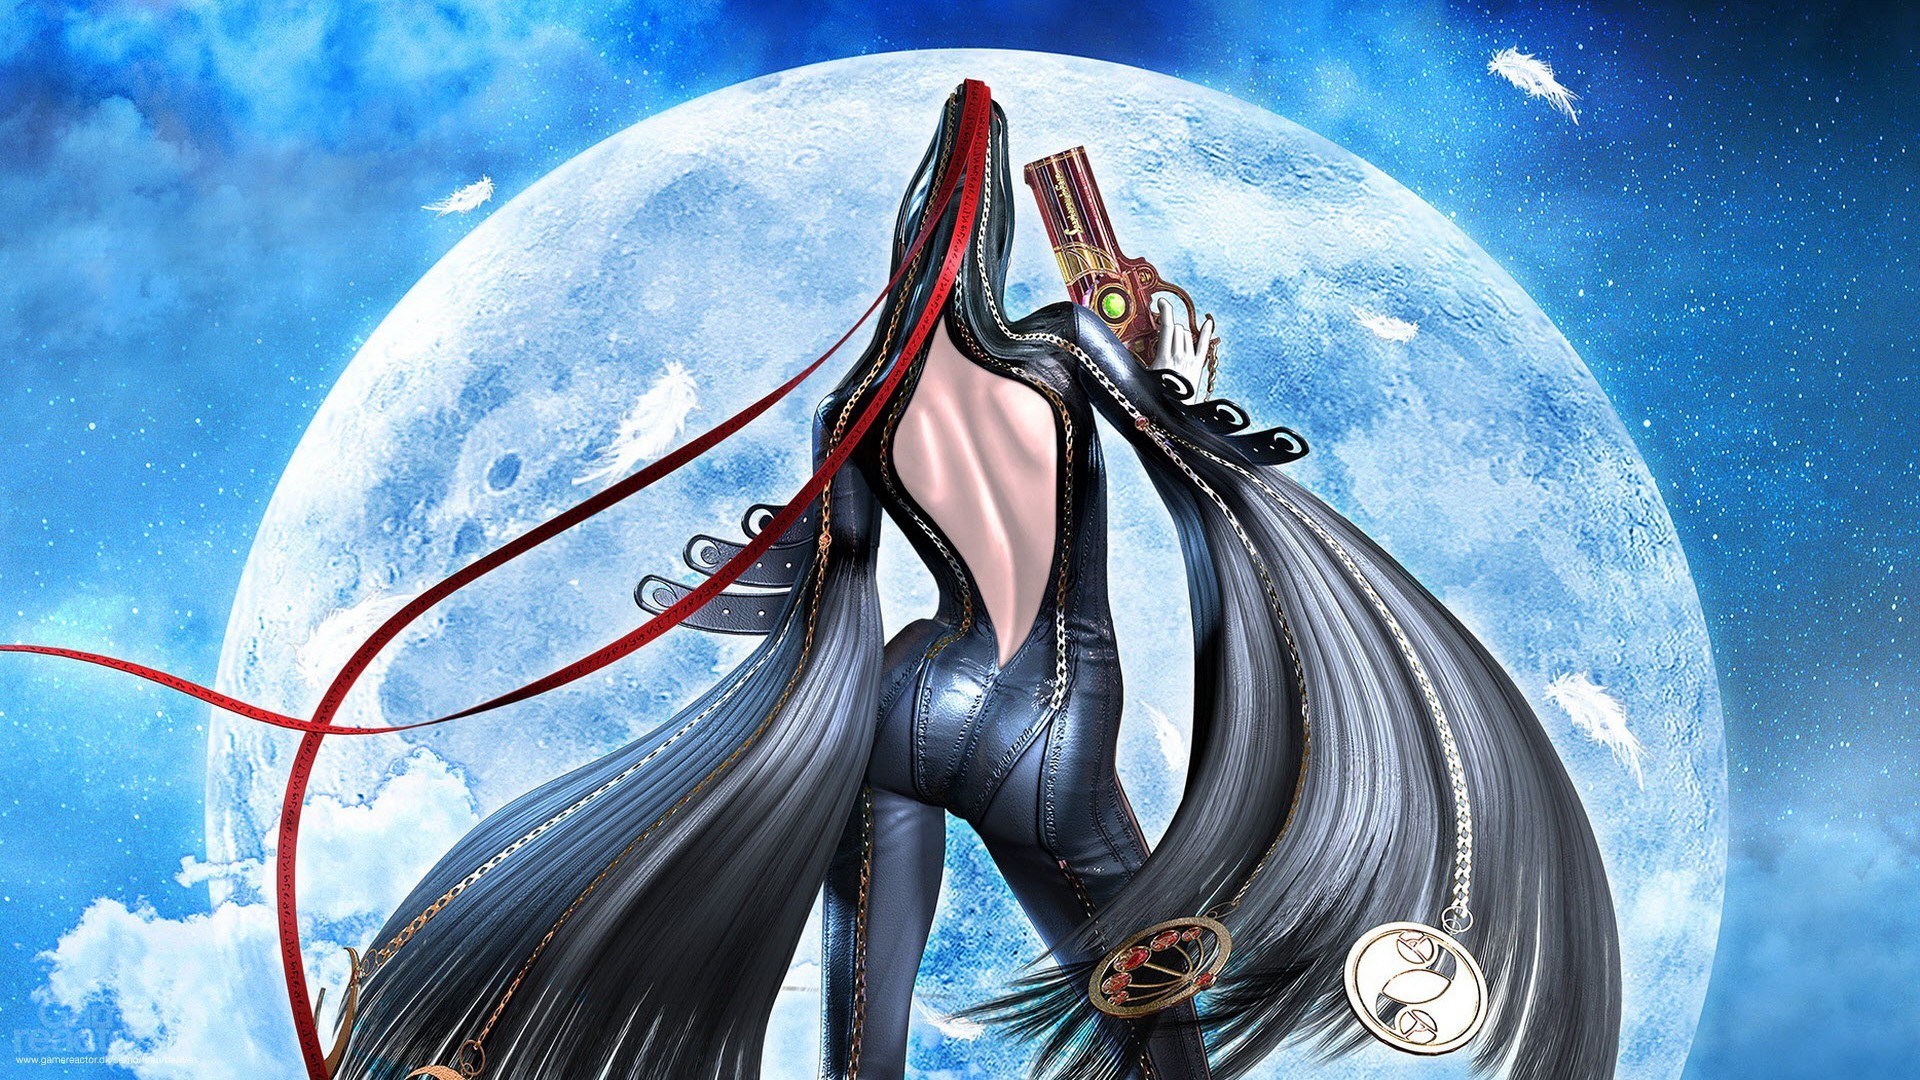 General 1920x1080 Bayonetta video games Moon video game art gun weapon video game girls dark hair long hair back standing ass